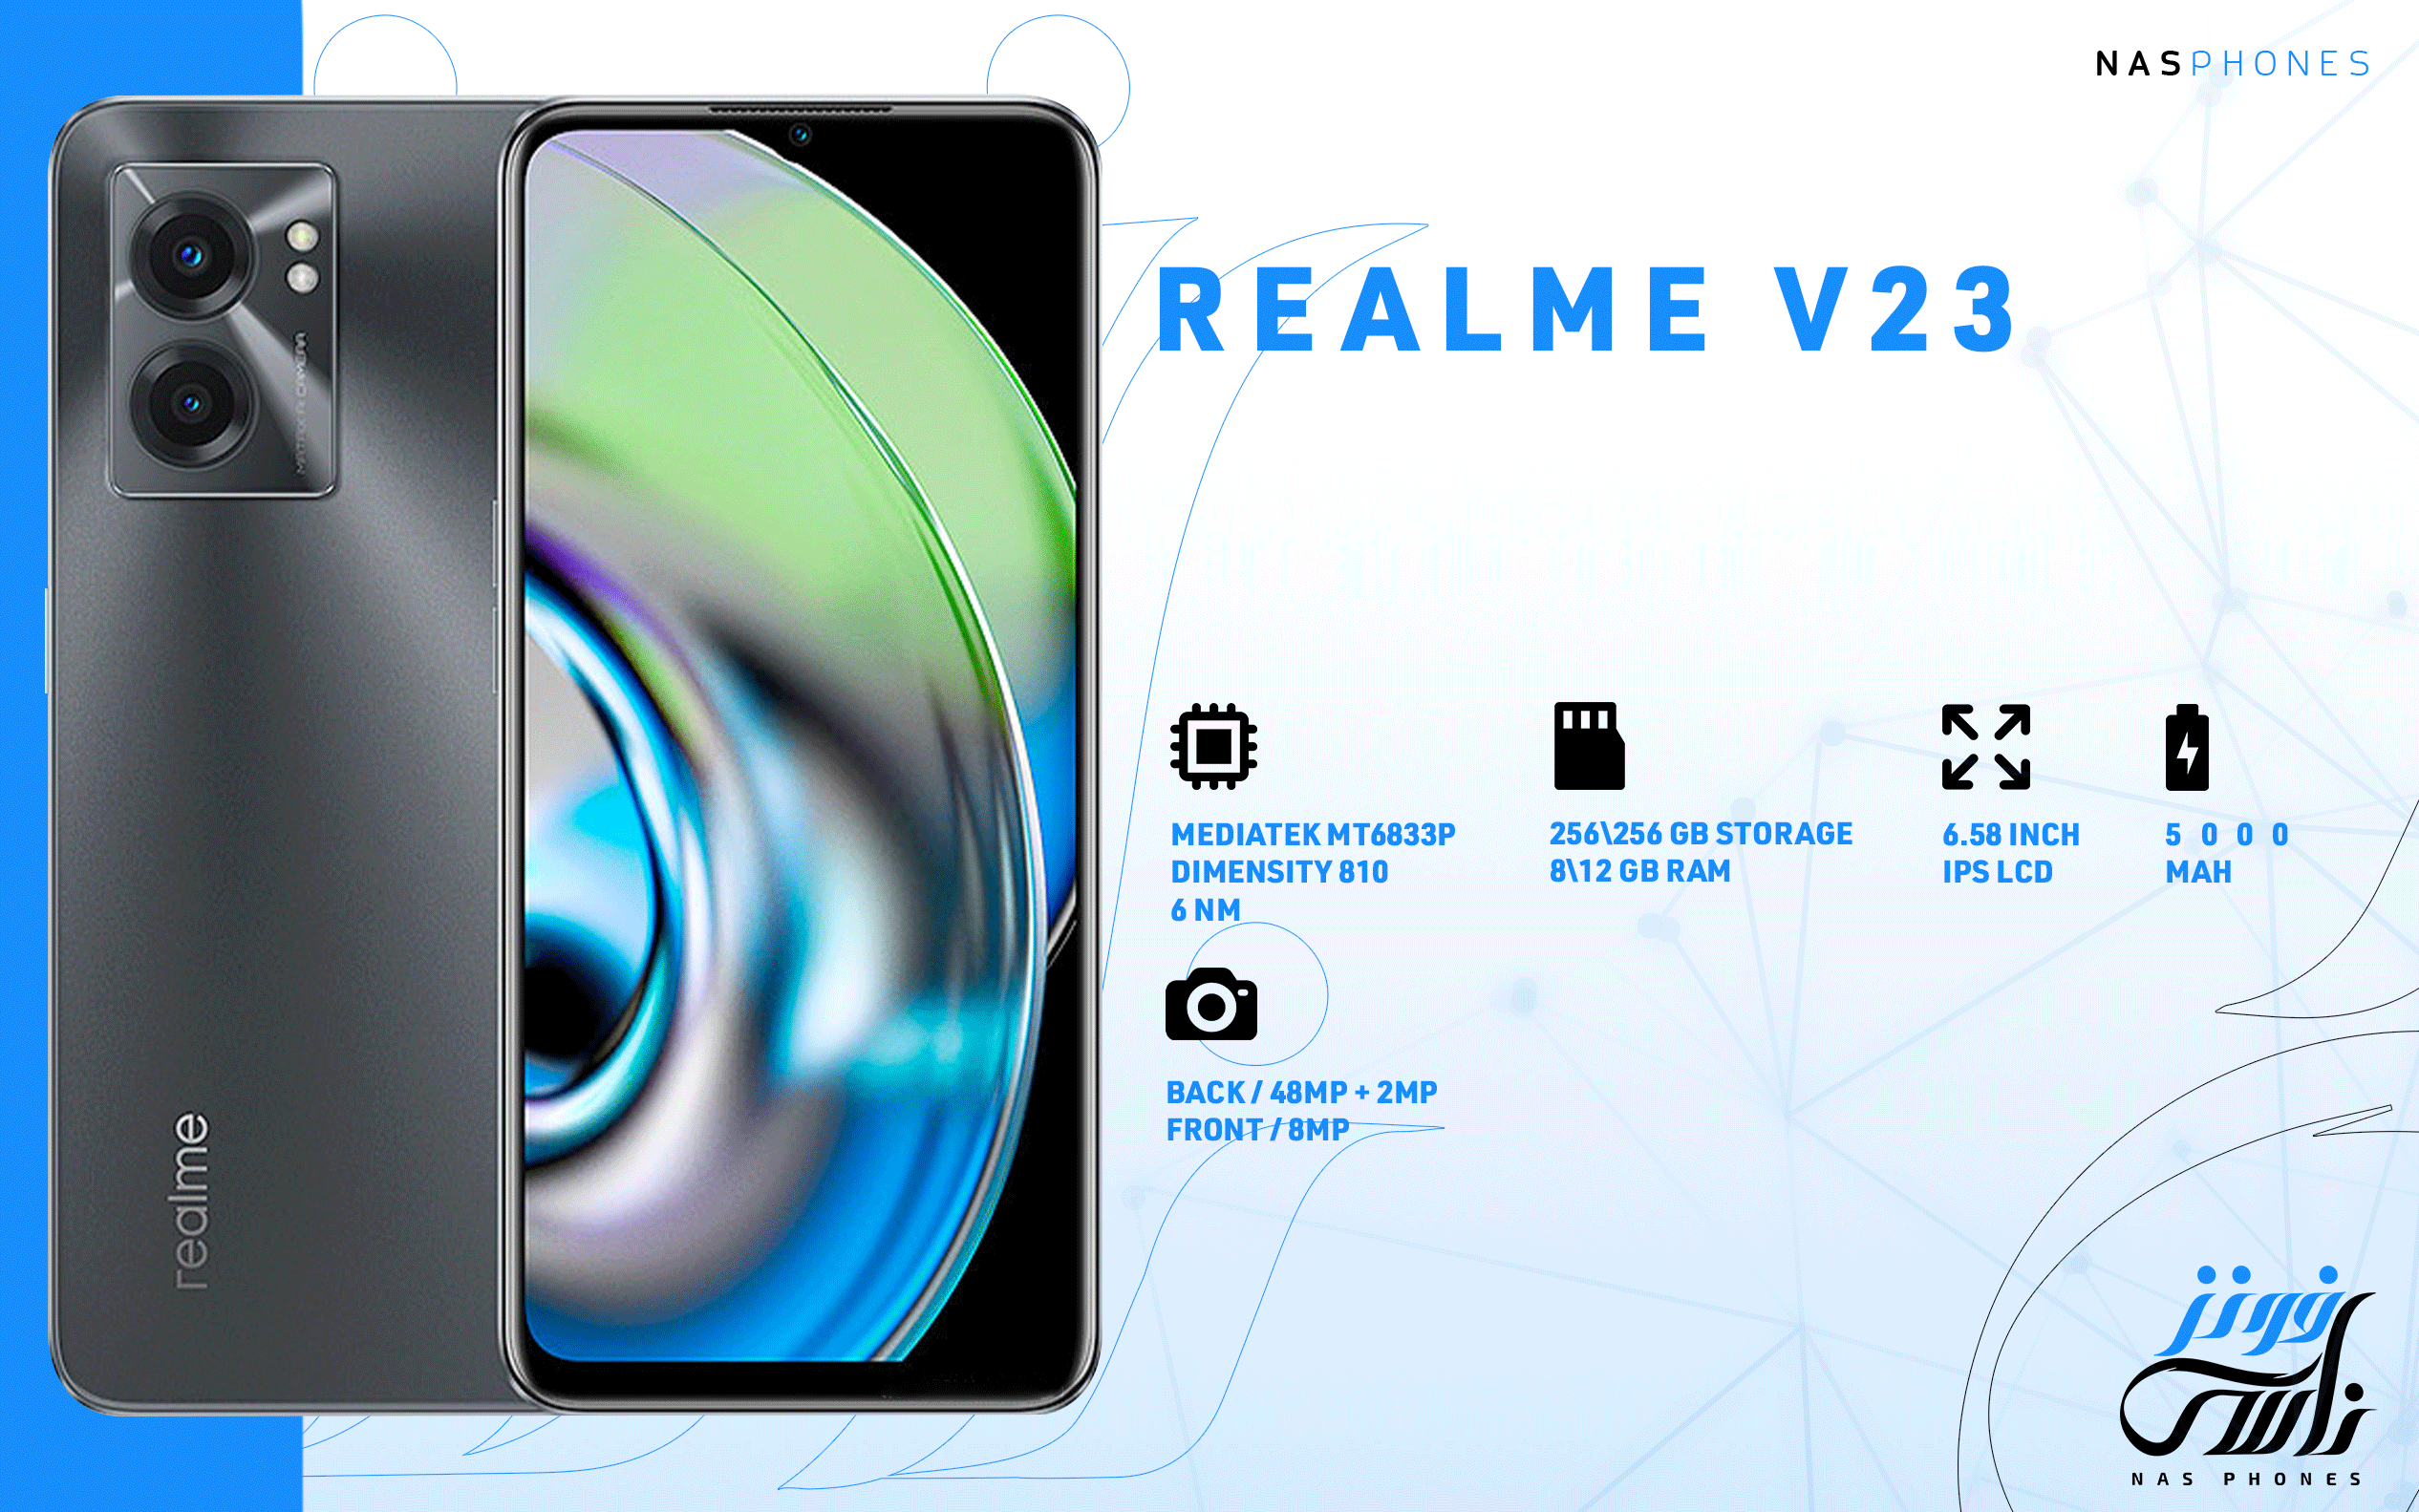 سعر ومواصفات هاتف Realme V23